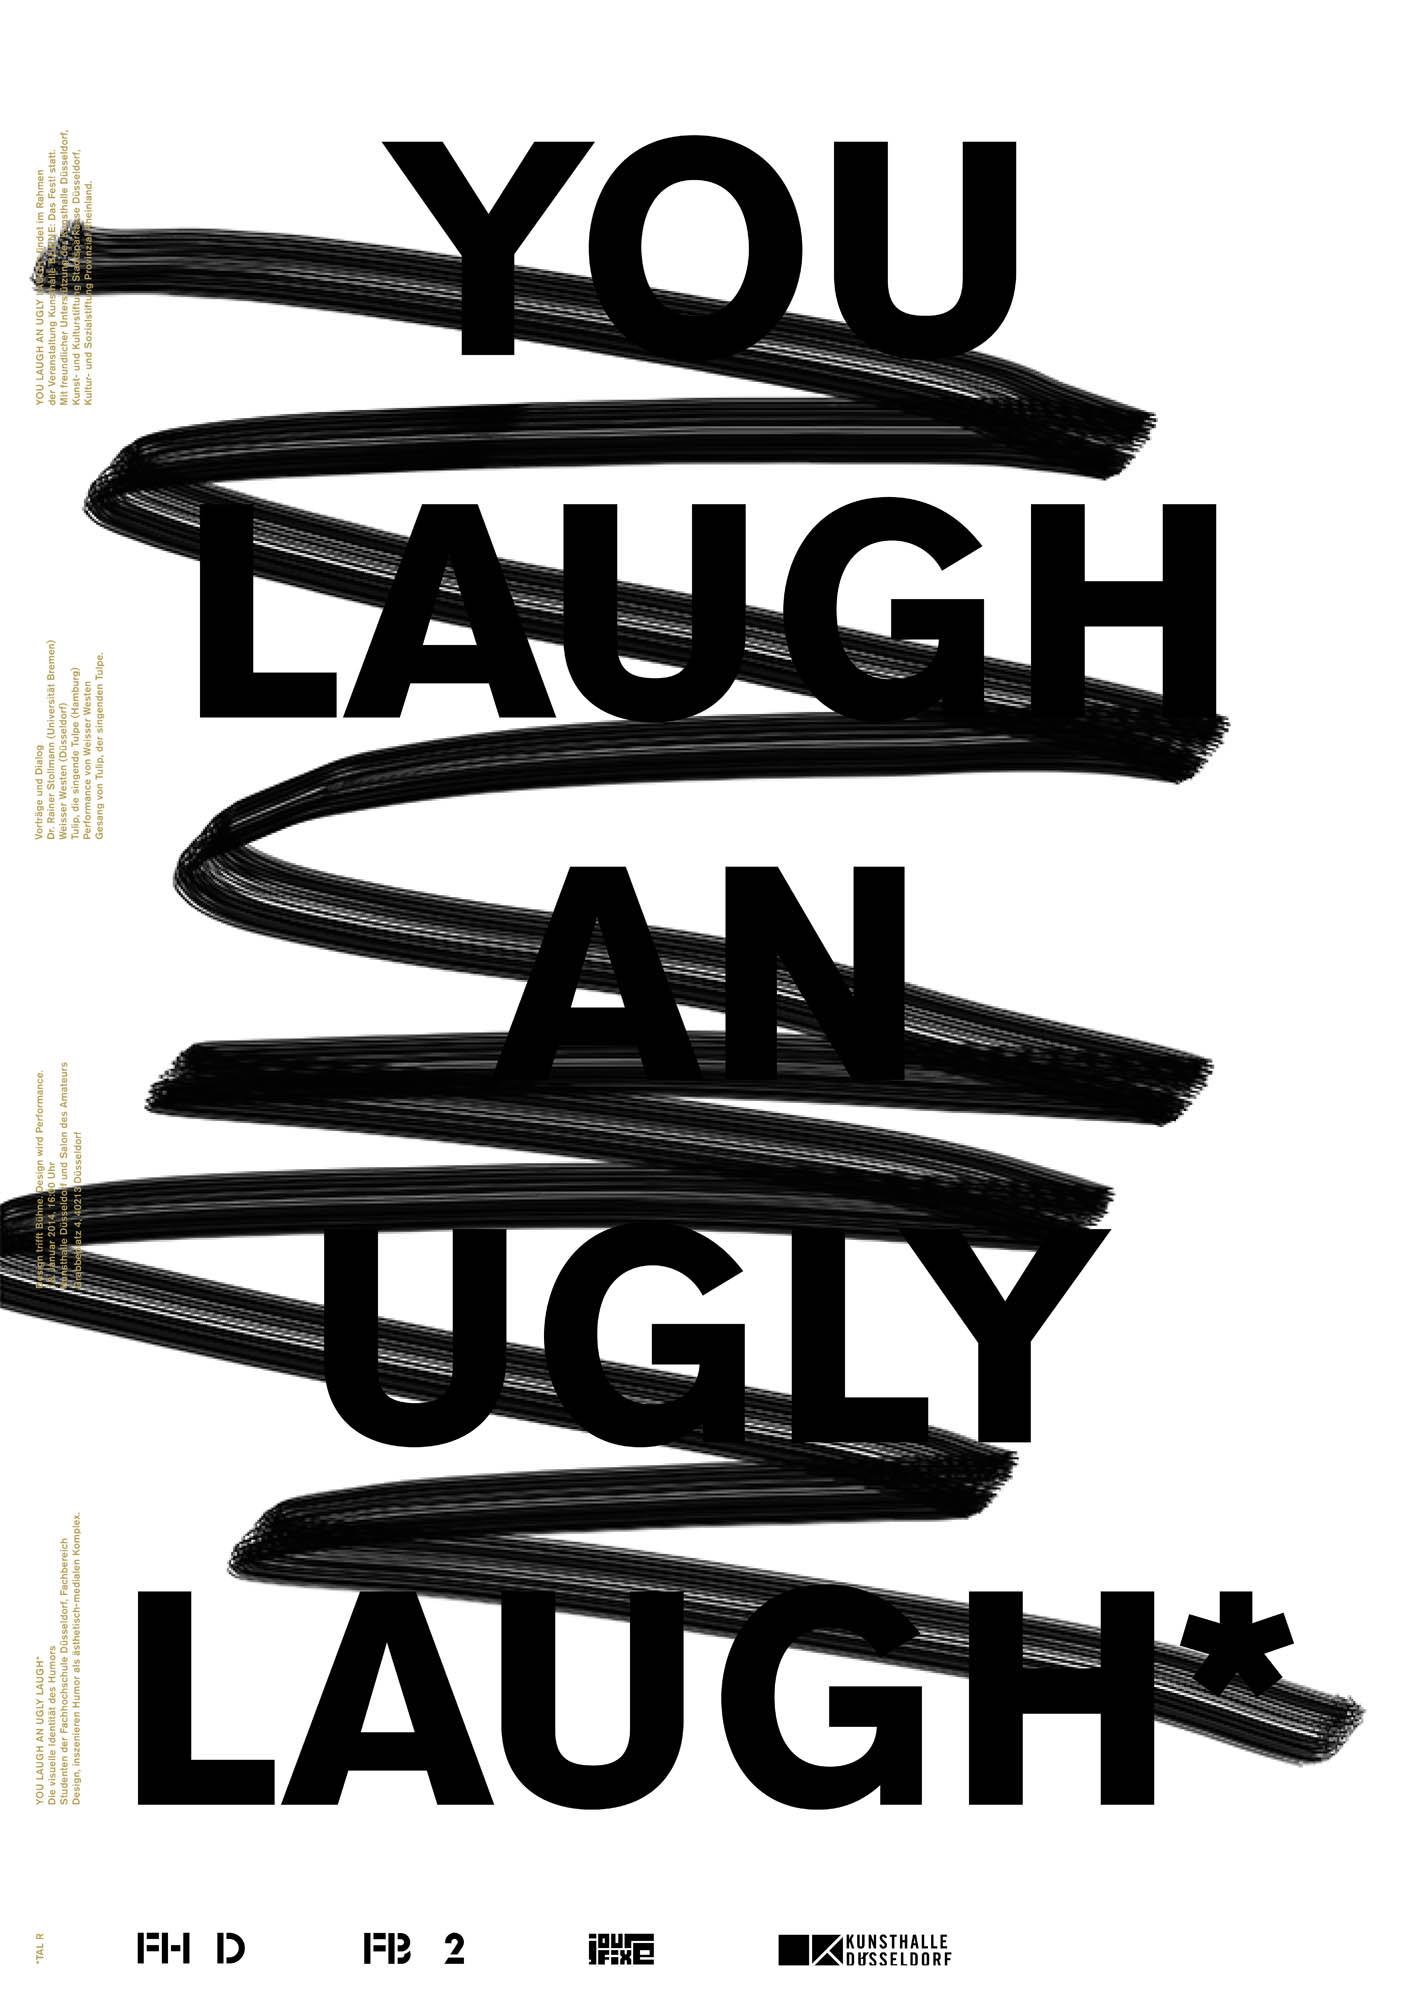 Gestaltet: Stephanie Passul, Betreut: Laurent Lacour, Herman Verkerk, Titel: You Laugh an Ugly Laugh, Jahr: 2014